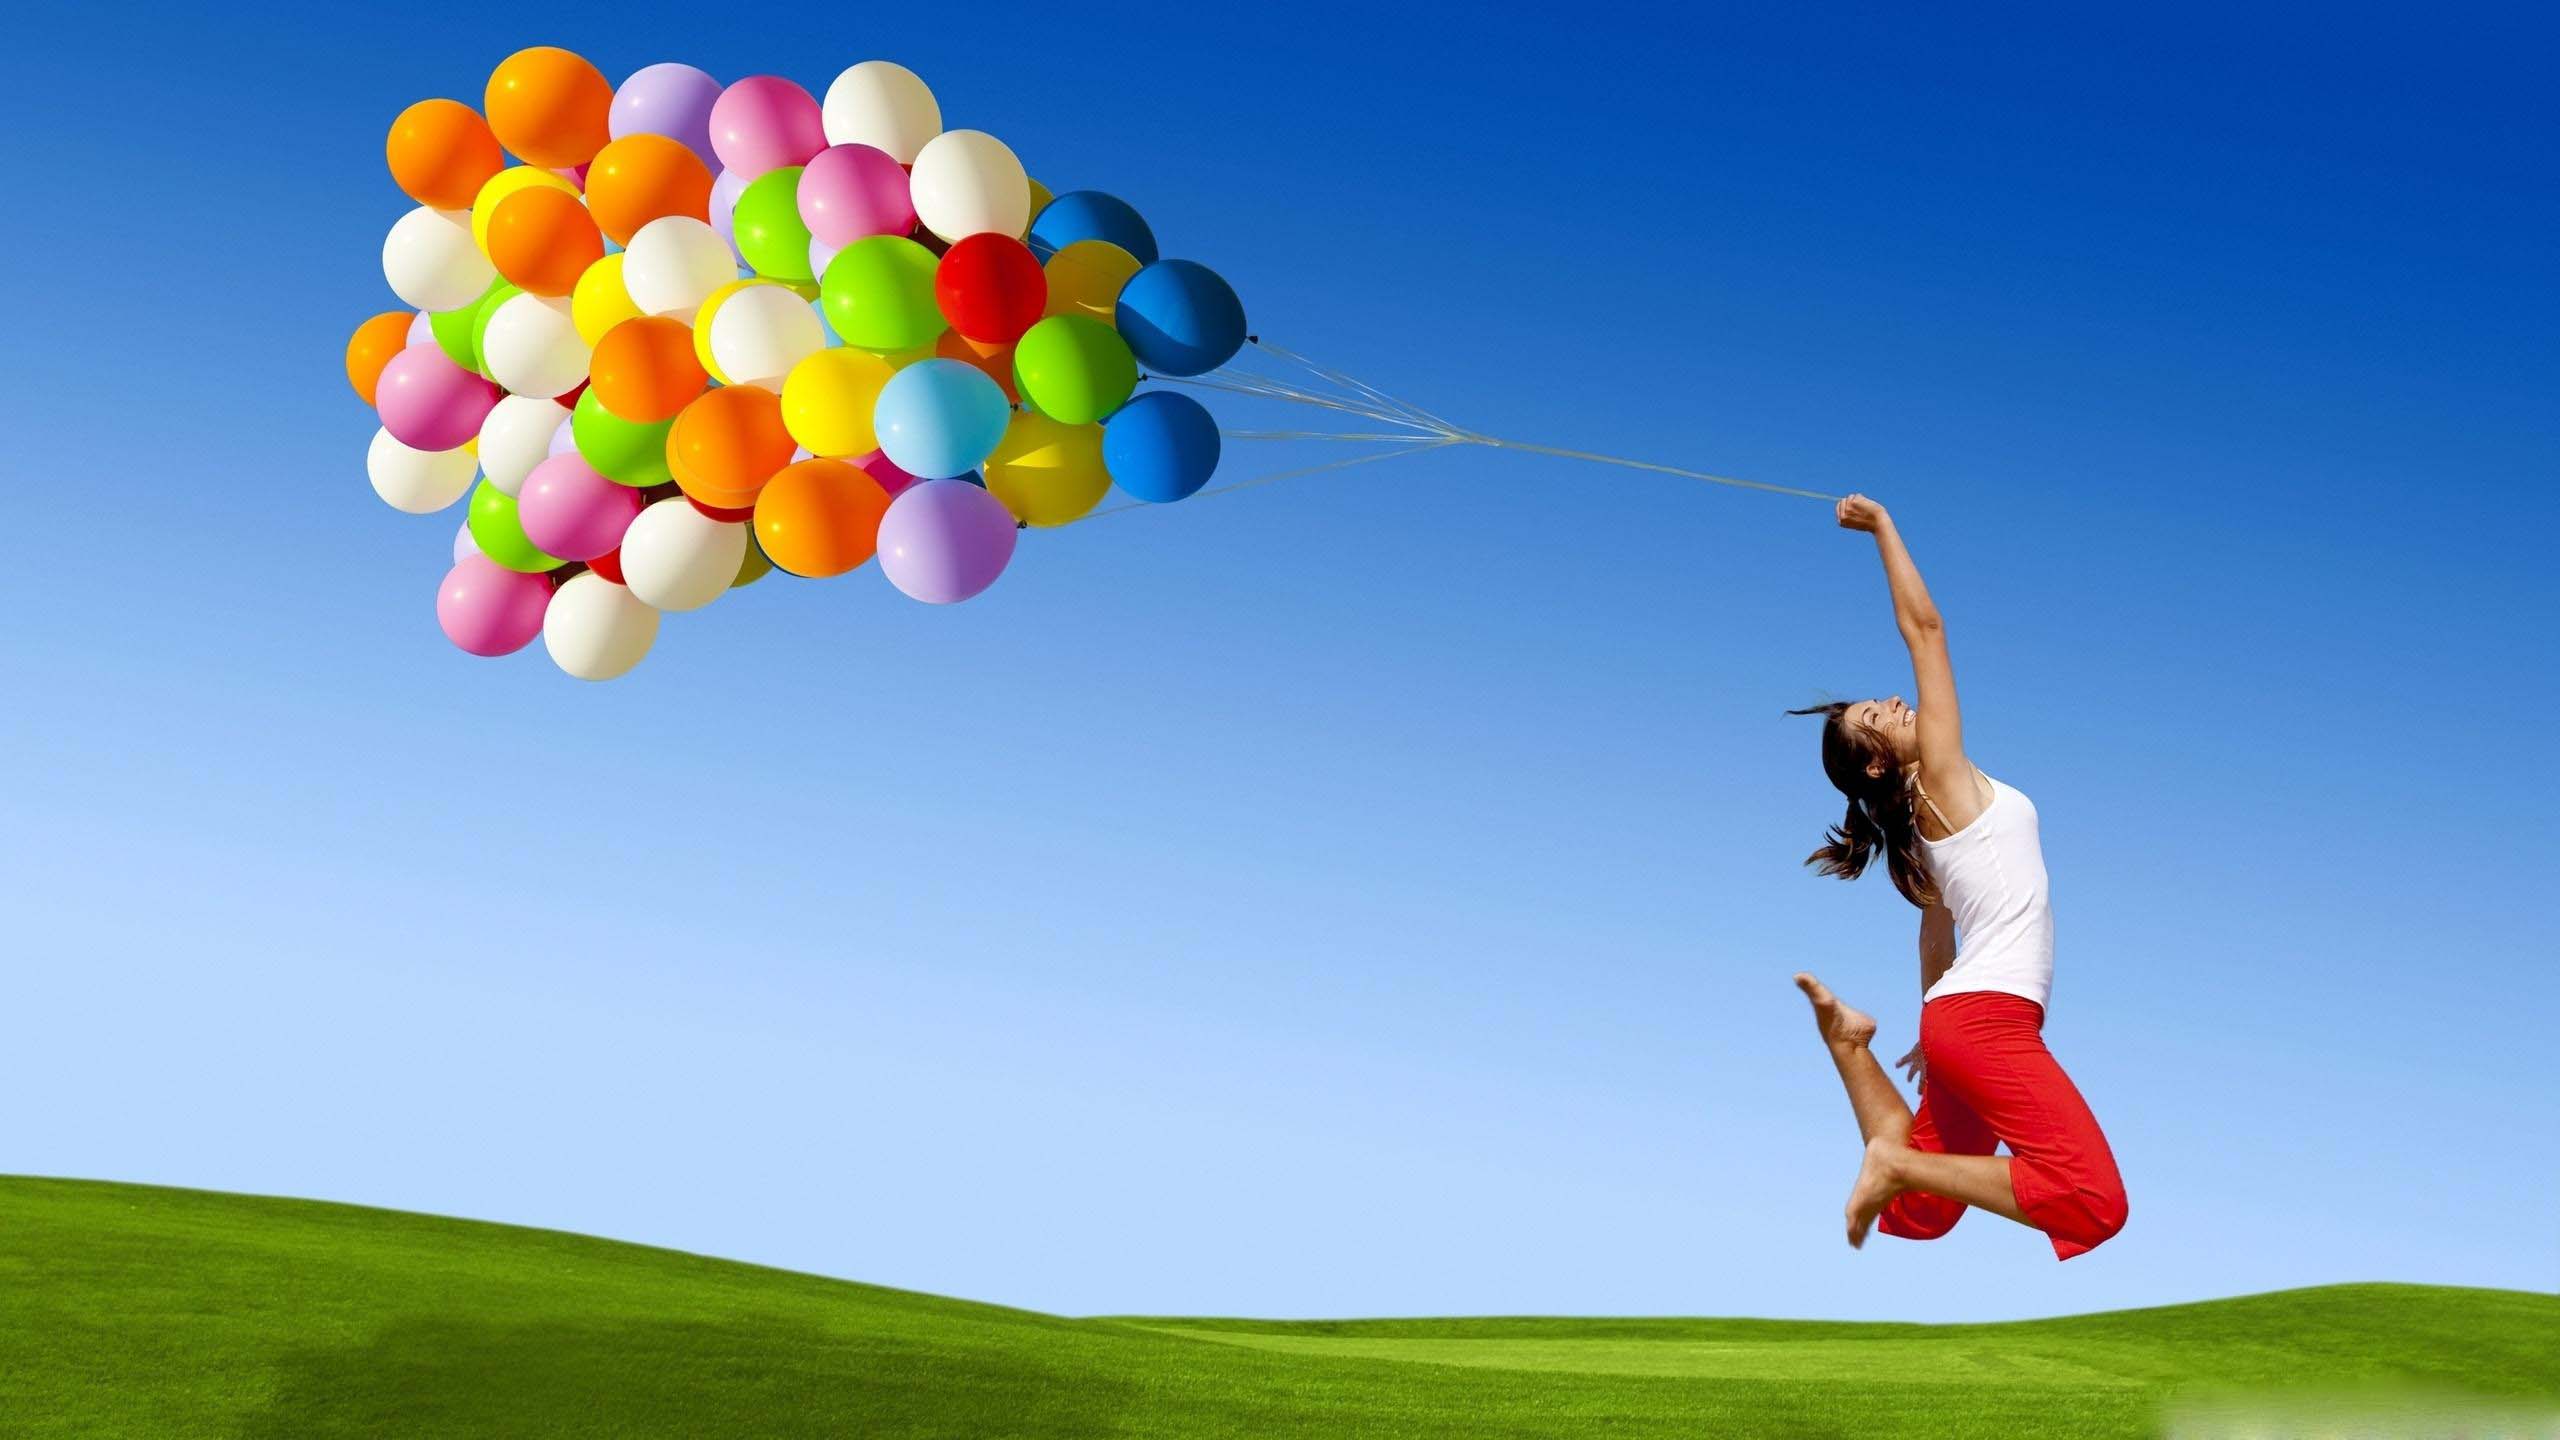 Balloon girl joyful moment capture image - HD Wallpapers